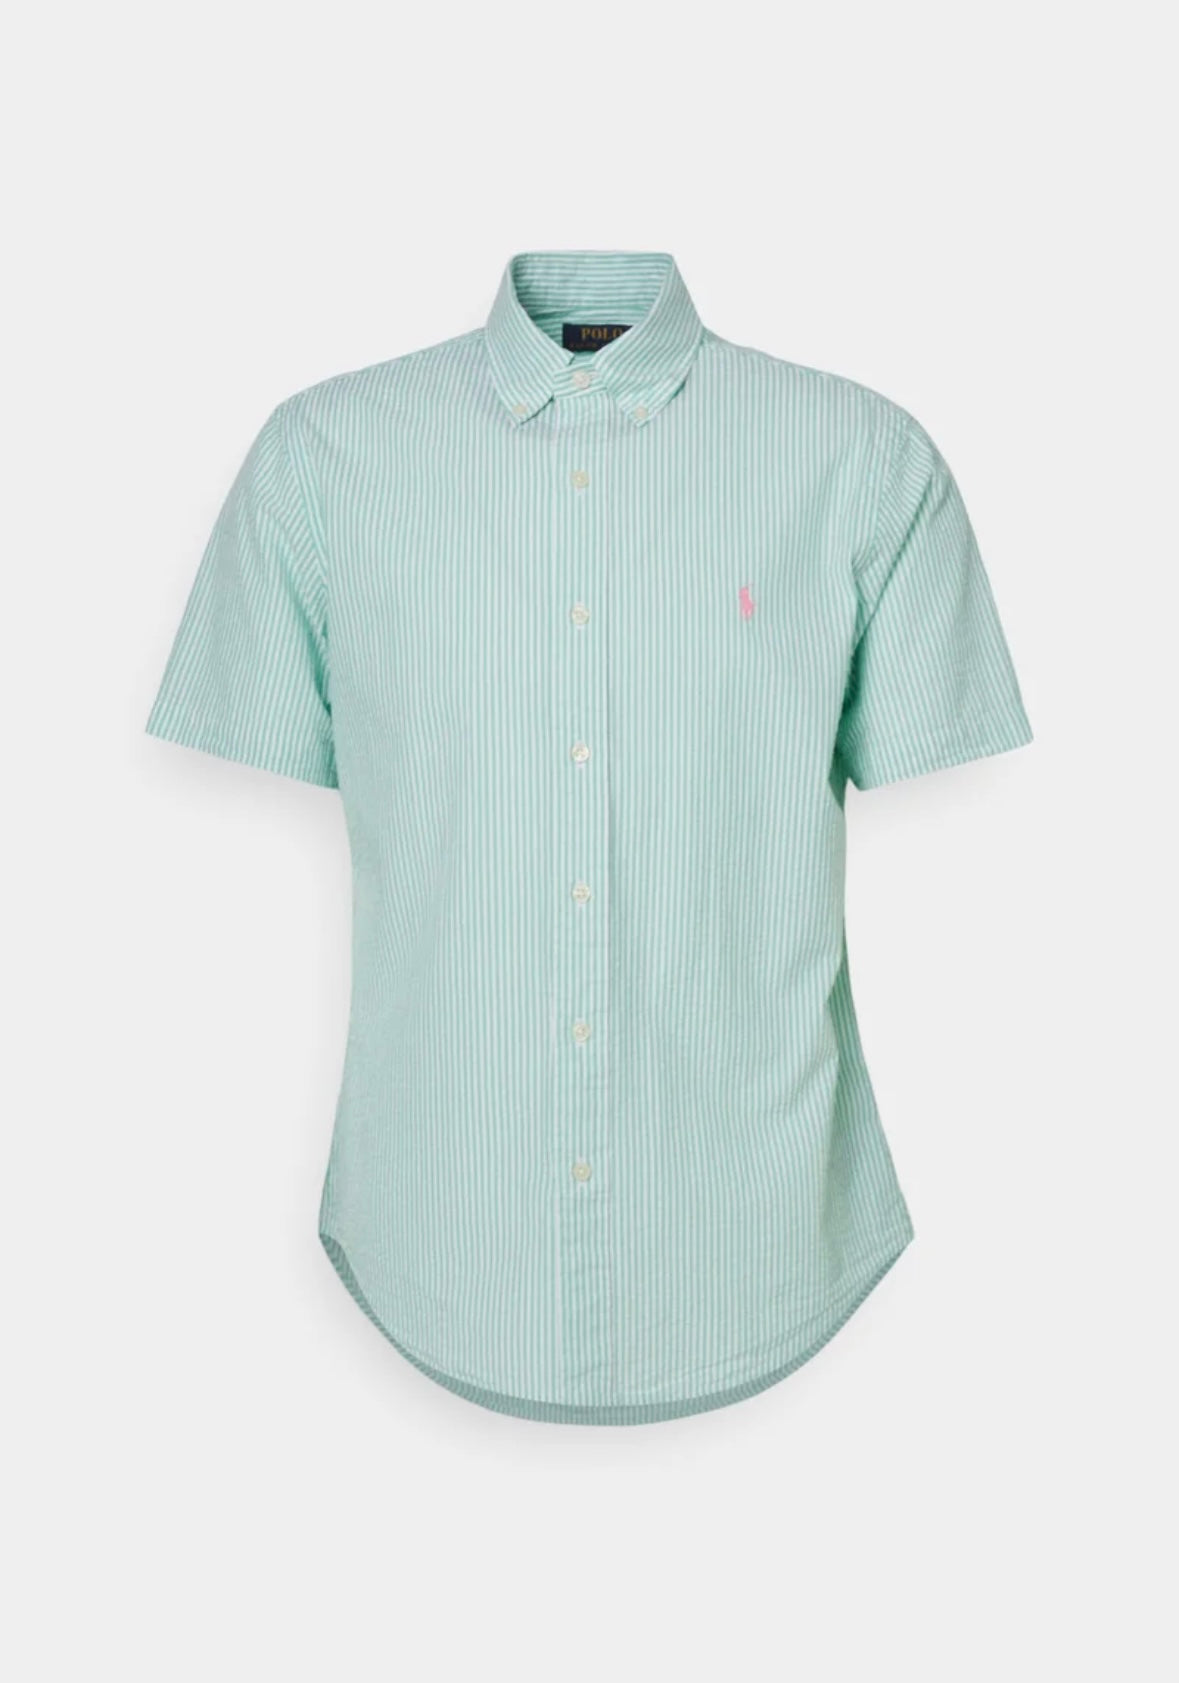 Polo Ralph Lauren Crepe Short shirt - Keywest Green/White